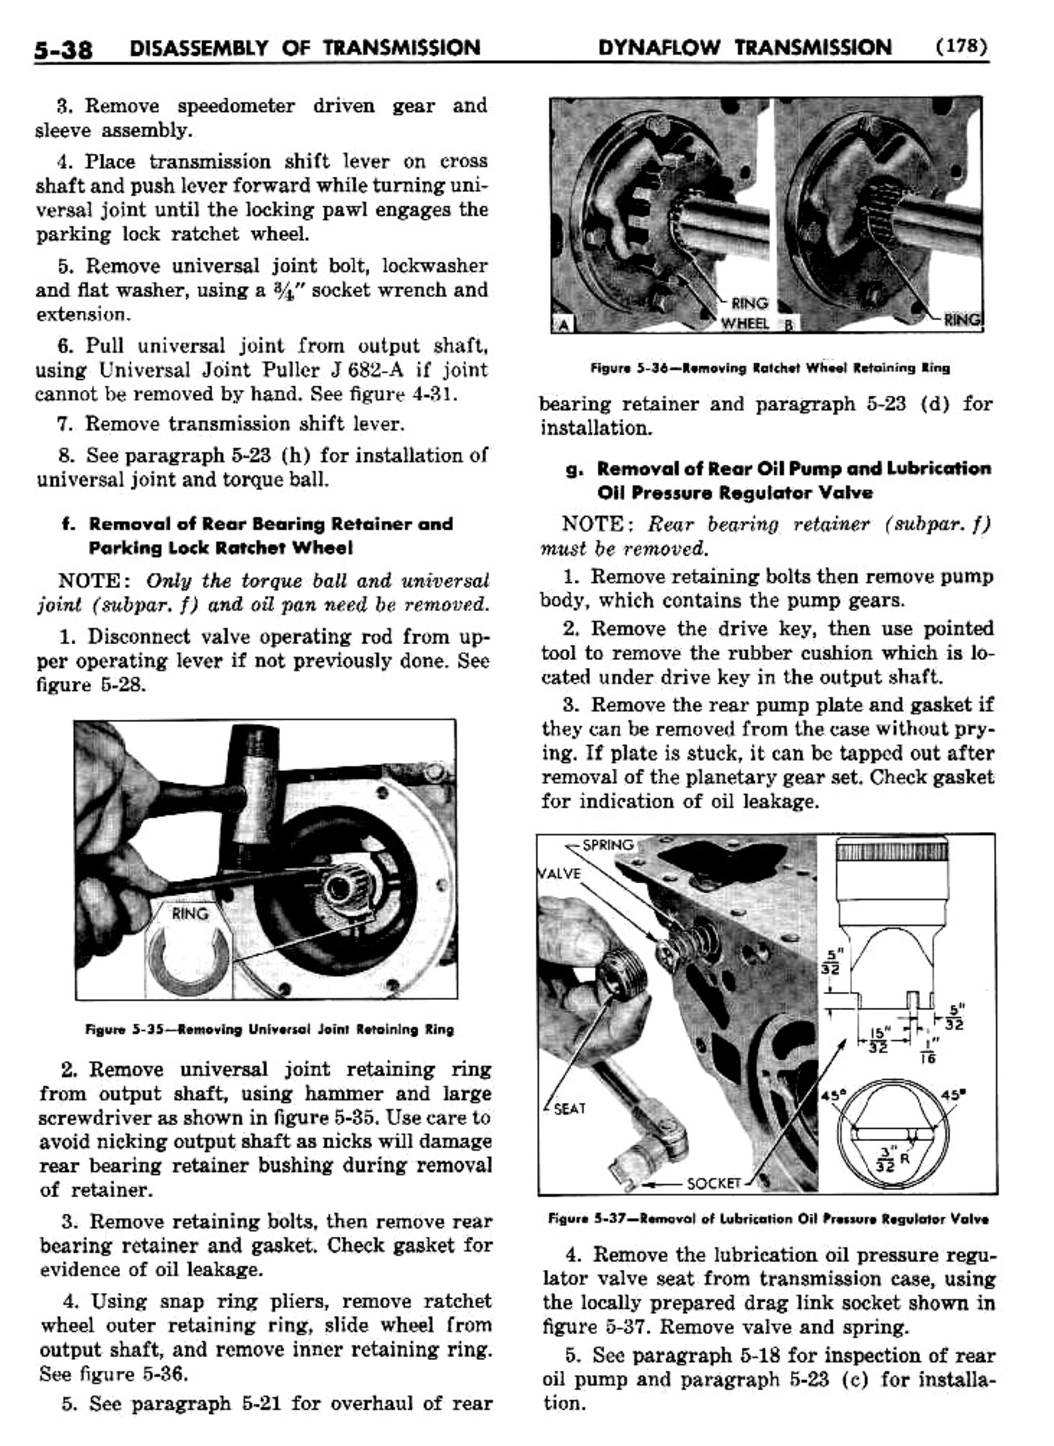 n_06 1955 Buick Shop Manual - Dynaflow-038-038.jpg